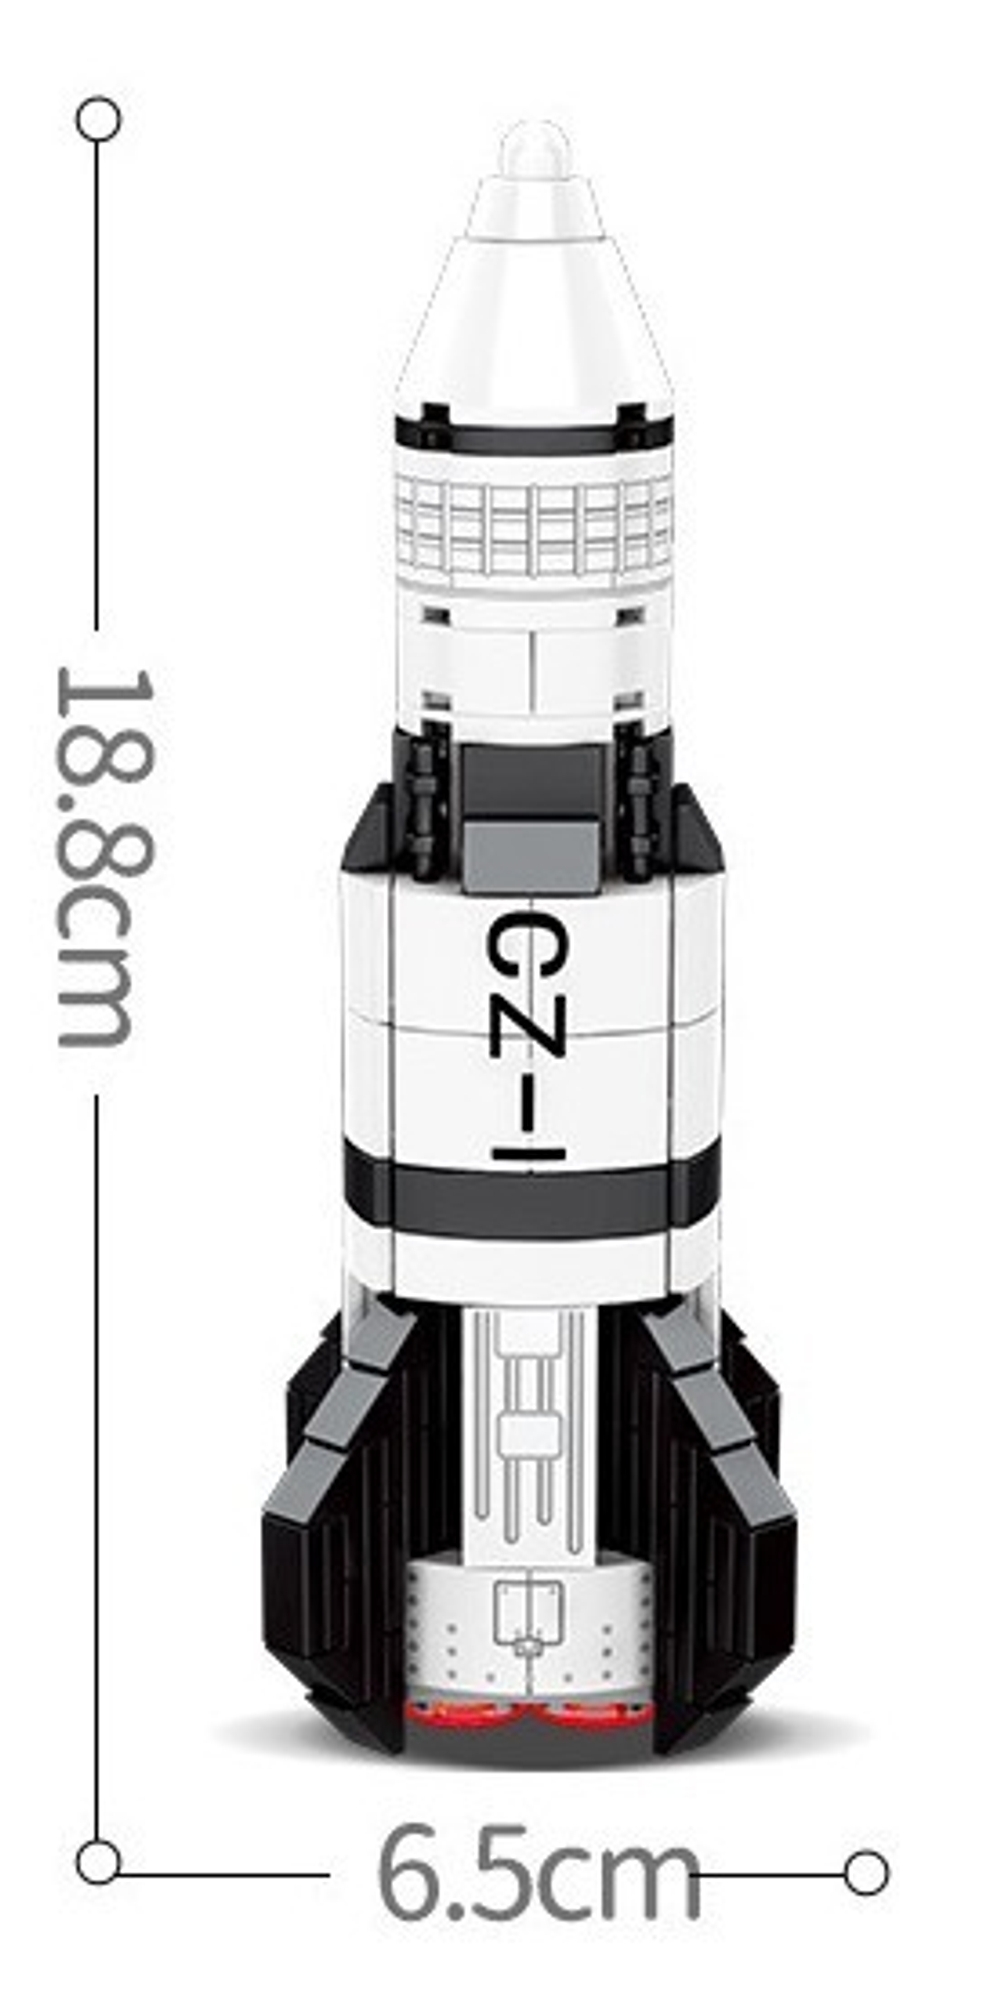 Конструктор Космическая ракета CZ-1 | 203013